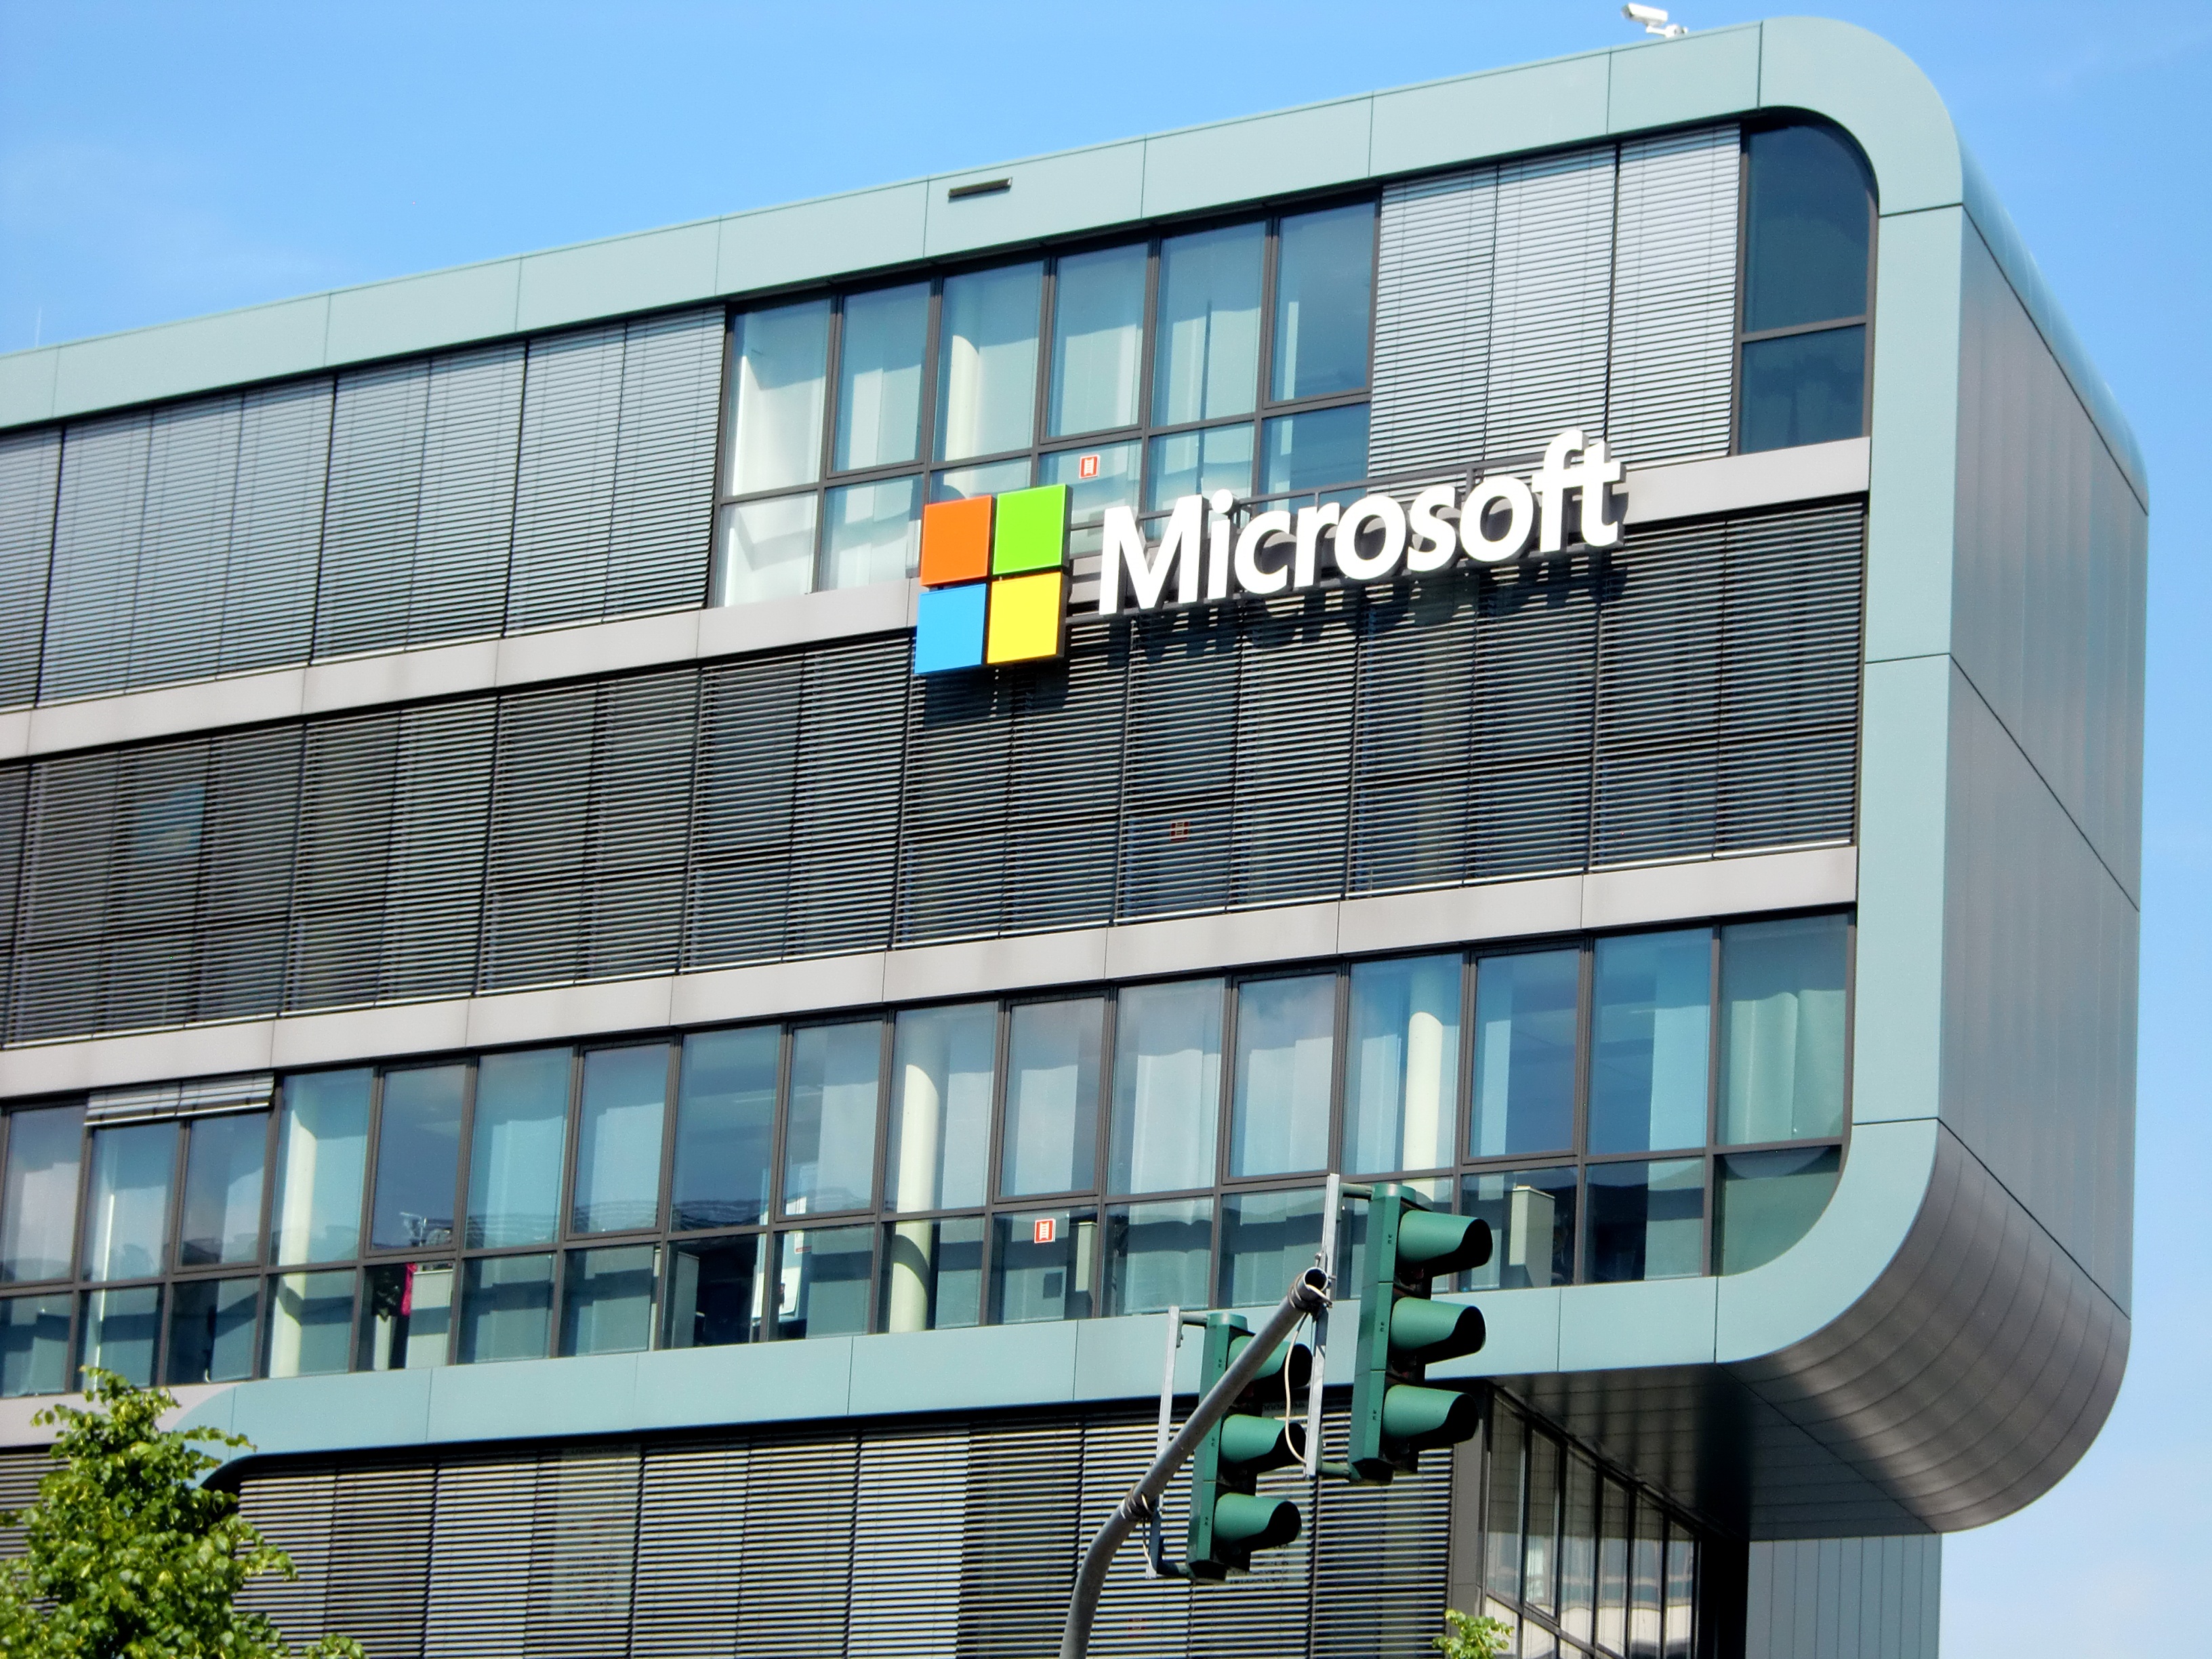 Diserang Netizen soal 'Tidak Sopan', IG Microsoft Tutup Kolom Komentar 